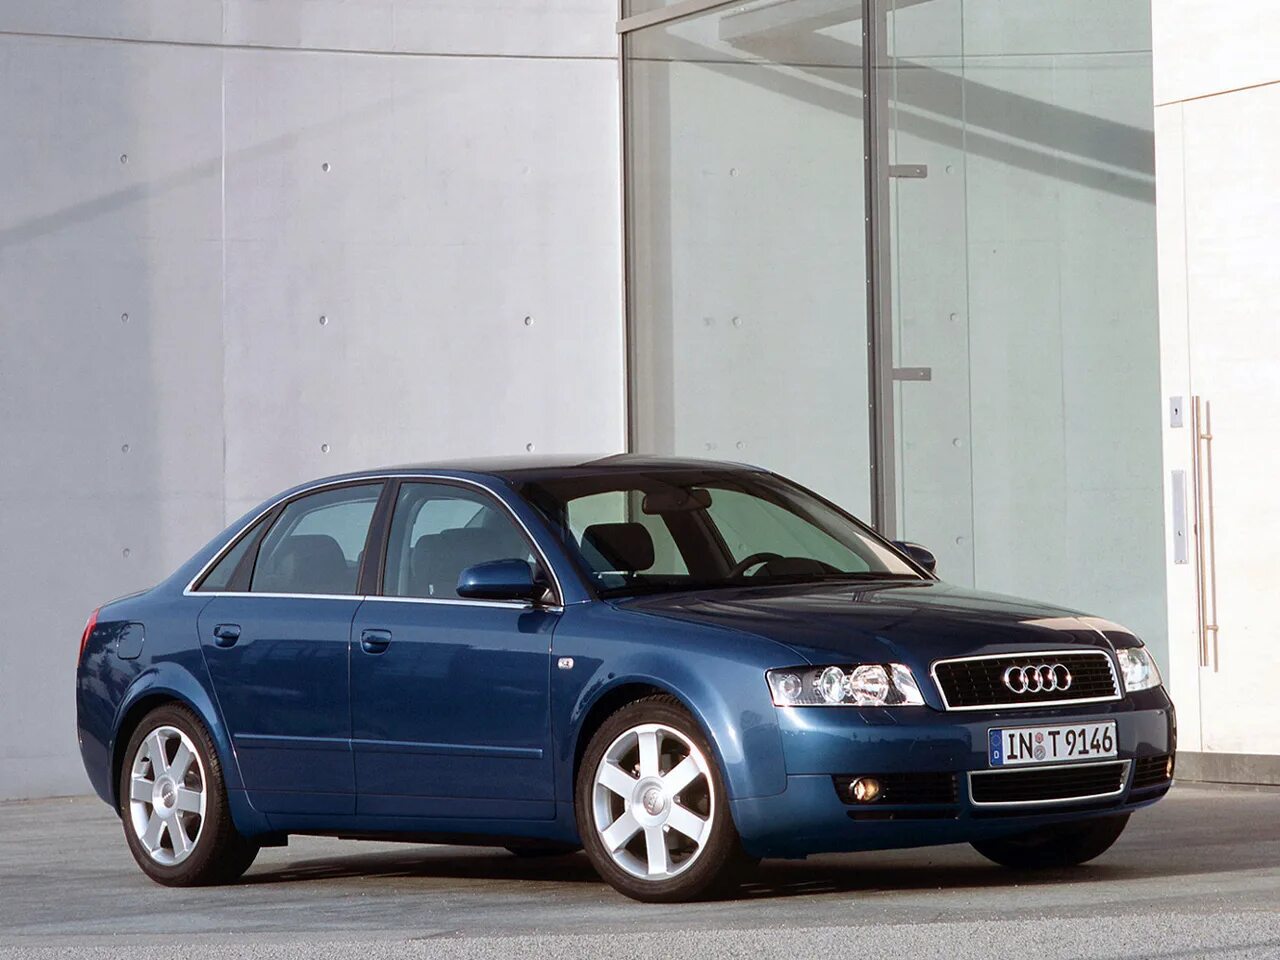 Ауди 6 2000 годов. Audi a4 b6 2000. Audi a4 b6 2002. Audi a4 b6 2004. Audi a4 b6 2003.